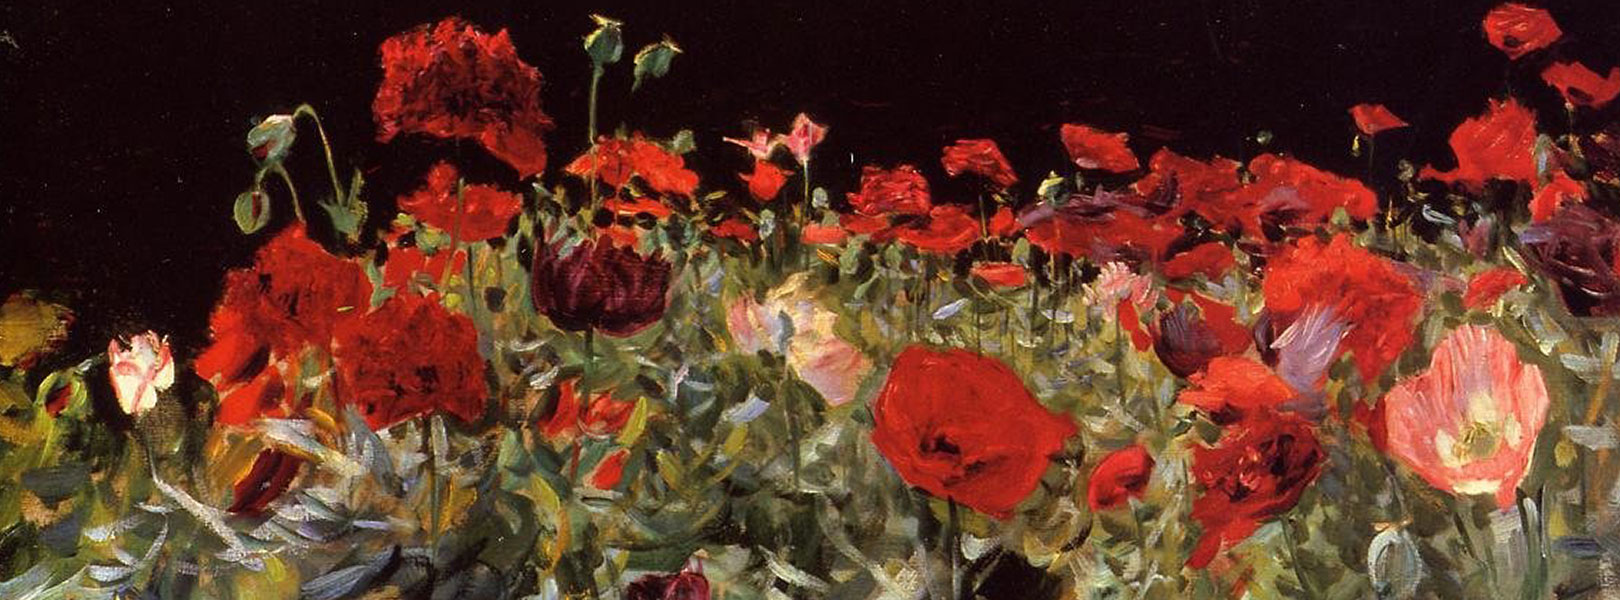 “Poppies” (John Singer Sargent, 1886)